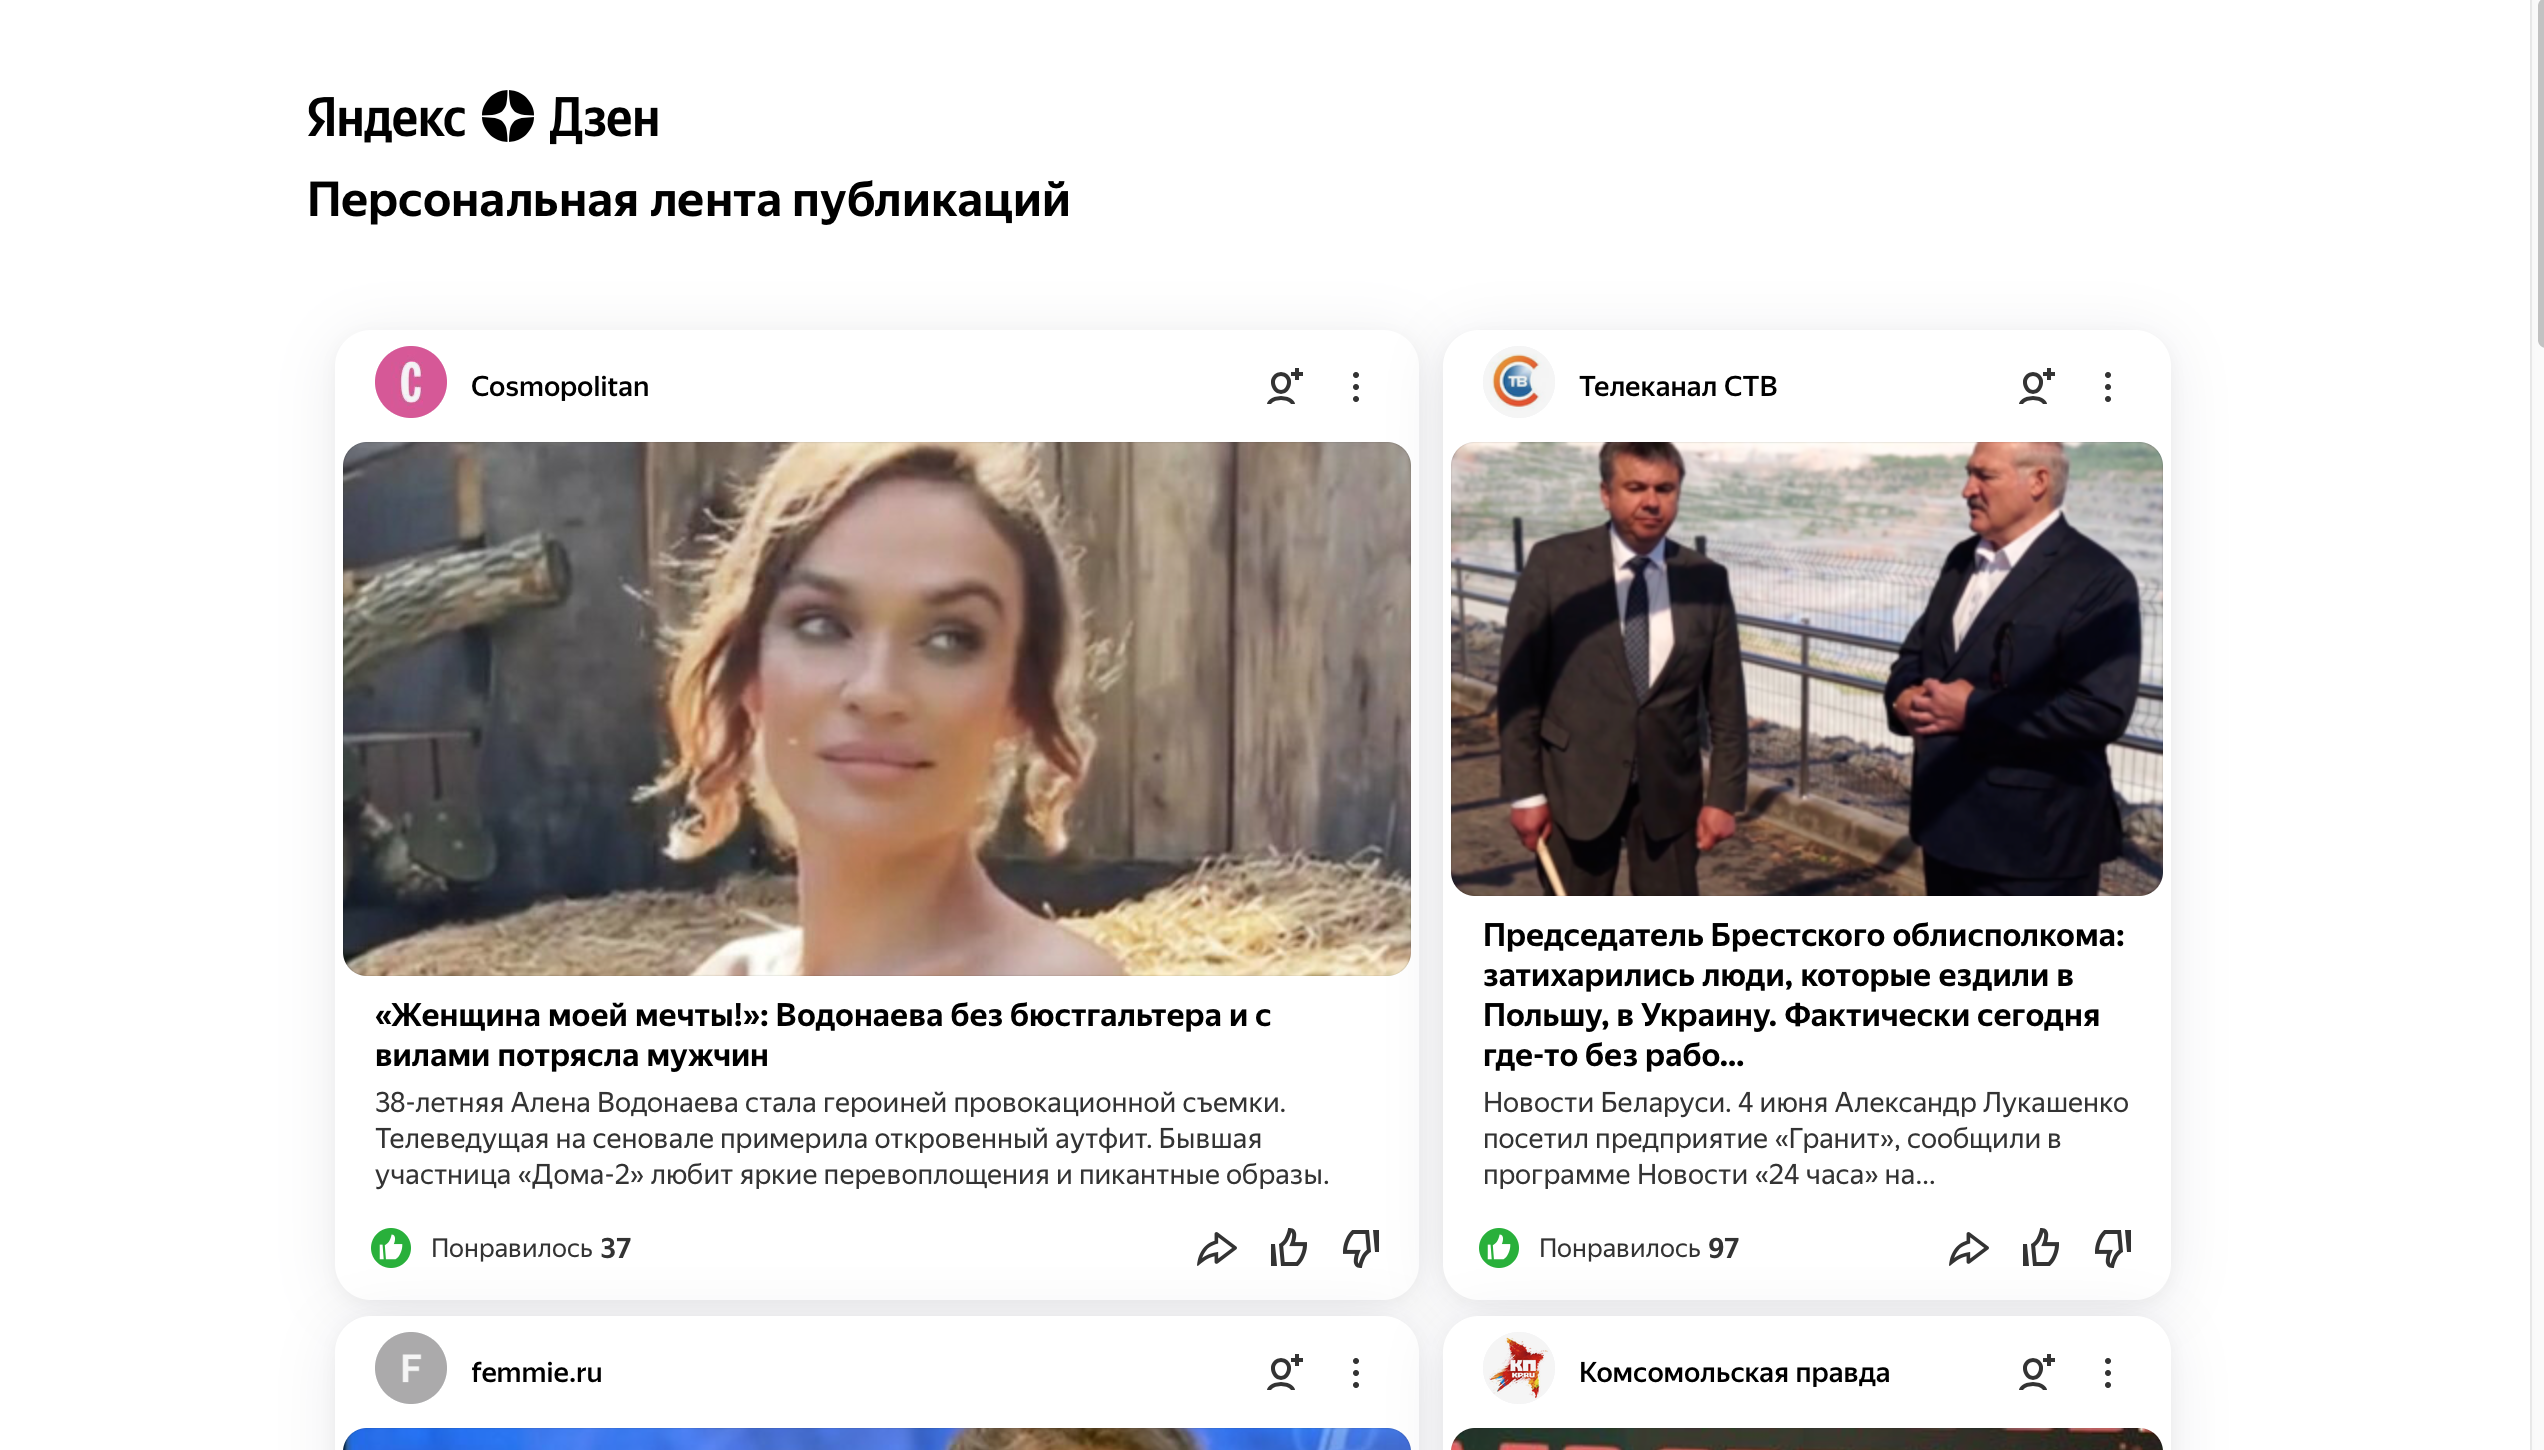 Обзор на Яндекс.Дзен